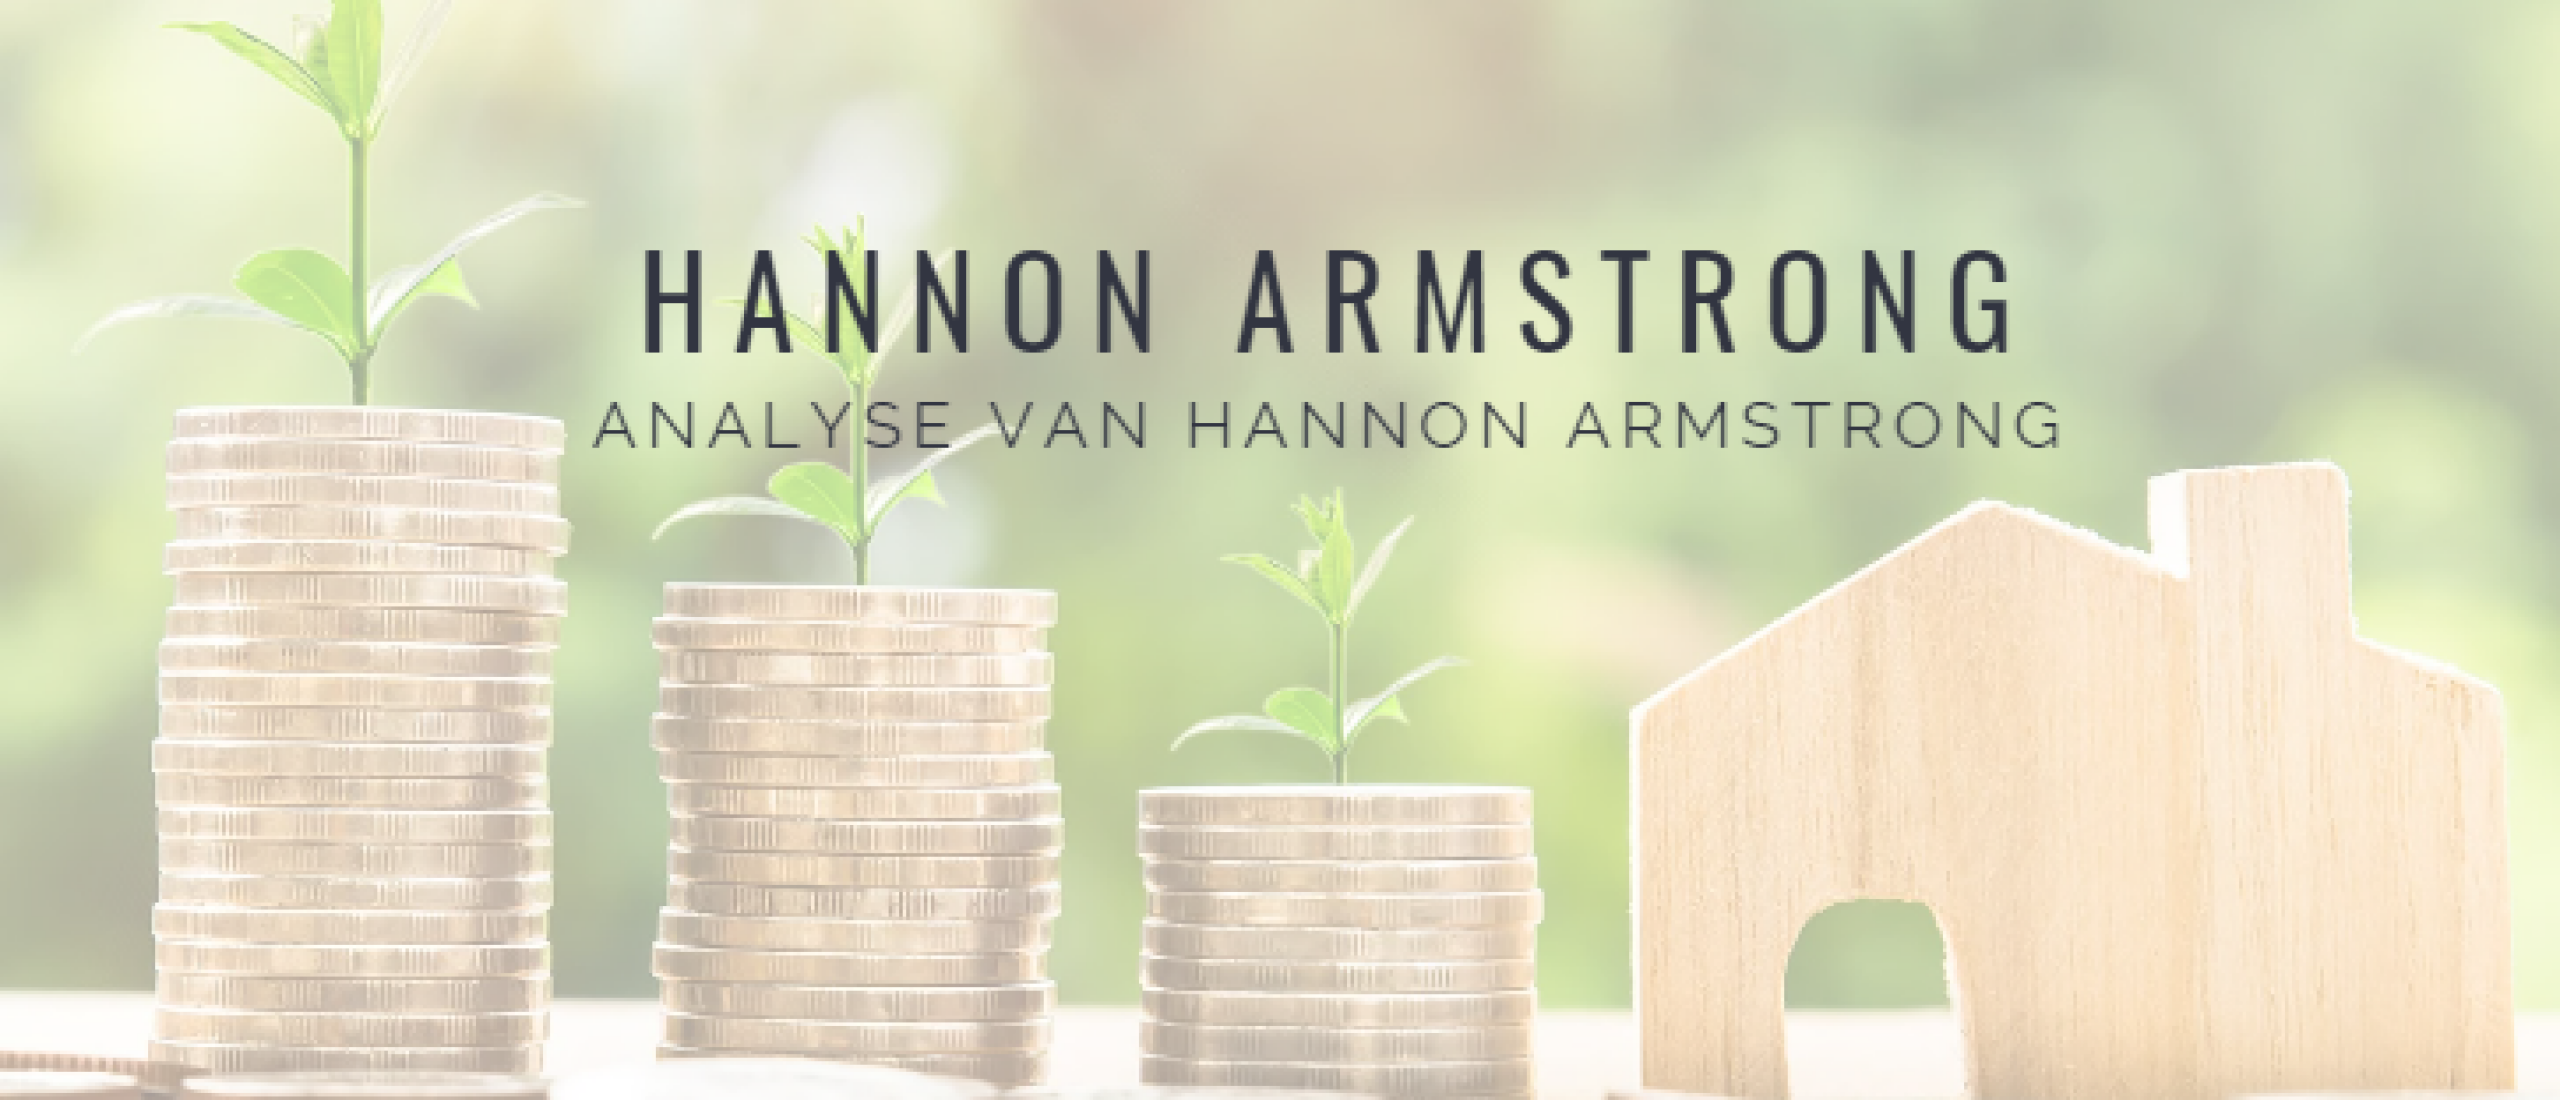 Hannon Armstrong Aandelen kopen? Analyse +5,7% dividend en +57% Groei | Happy Investors